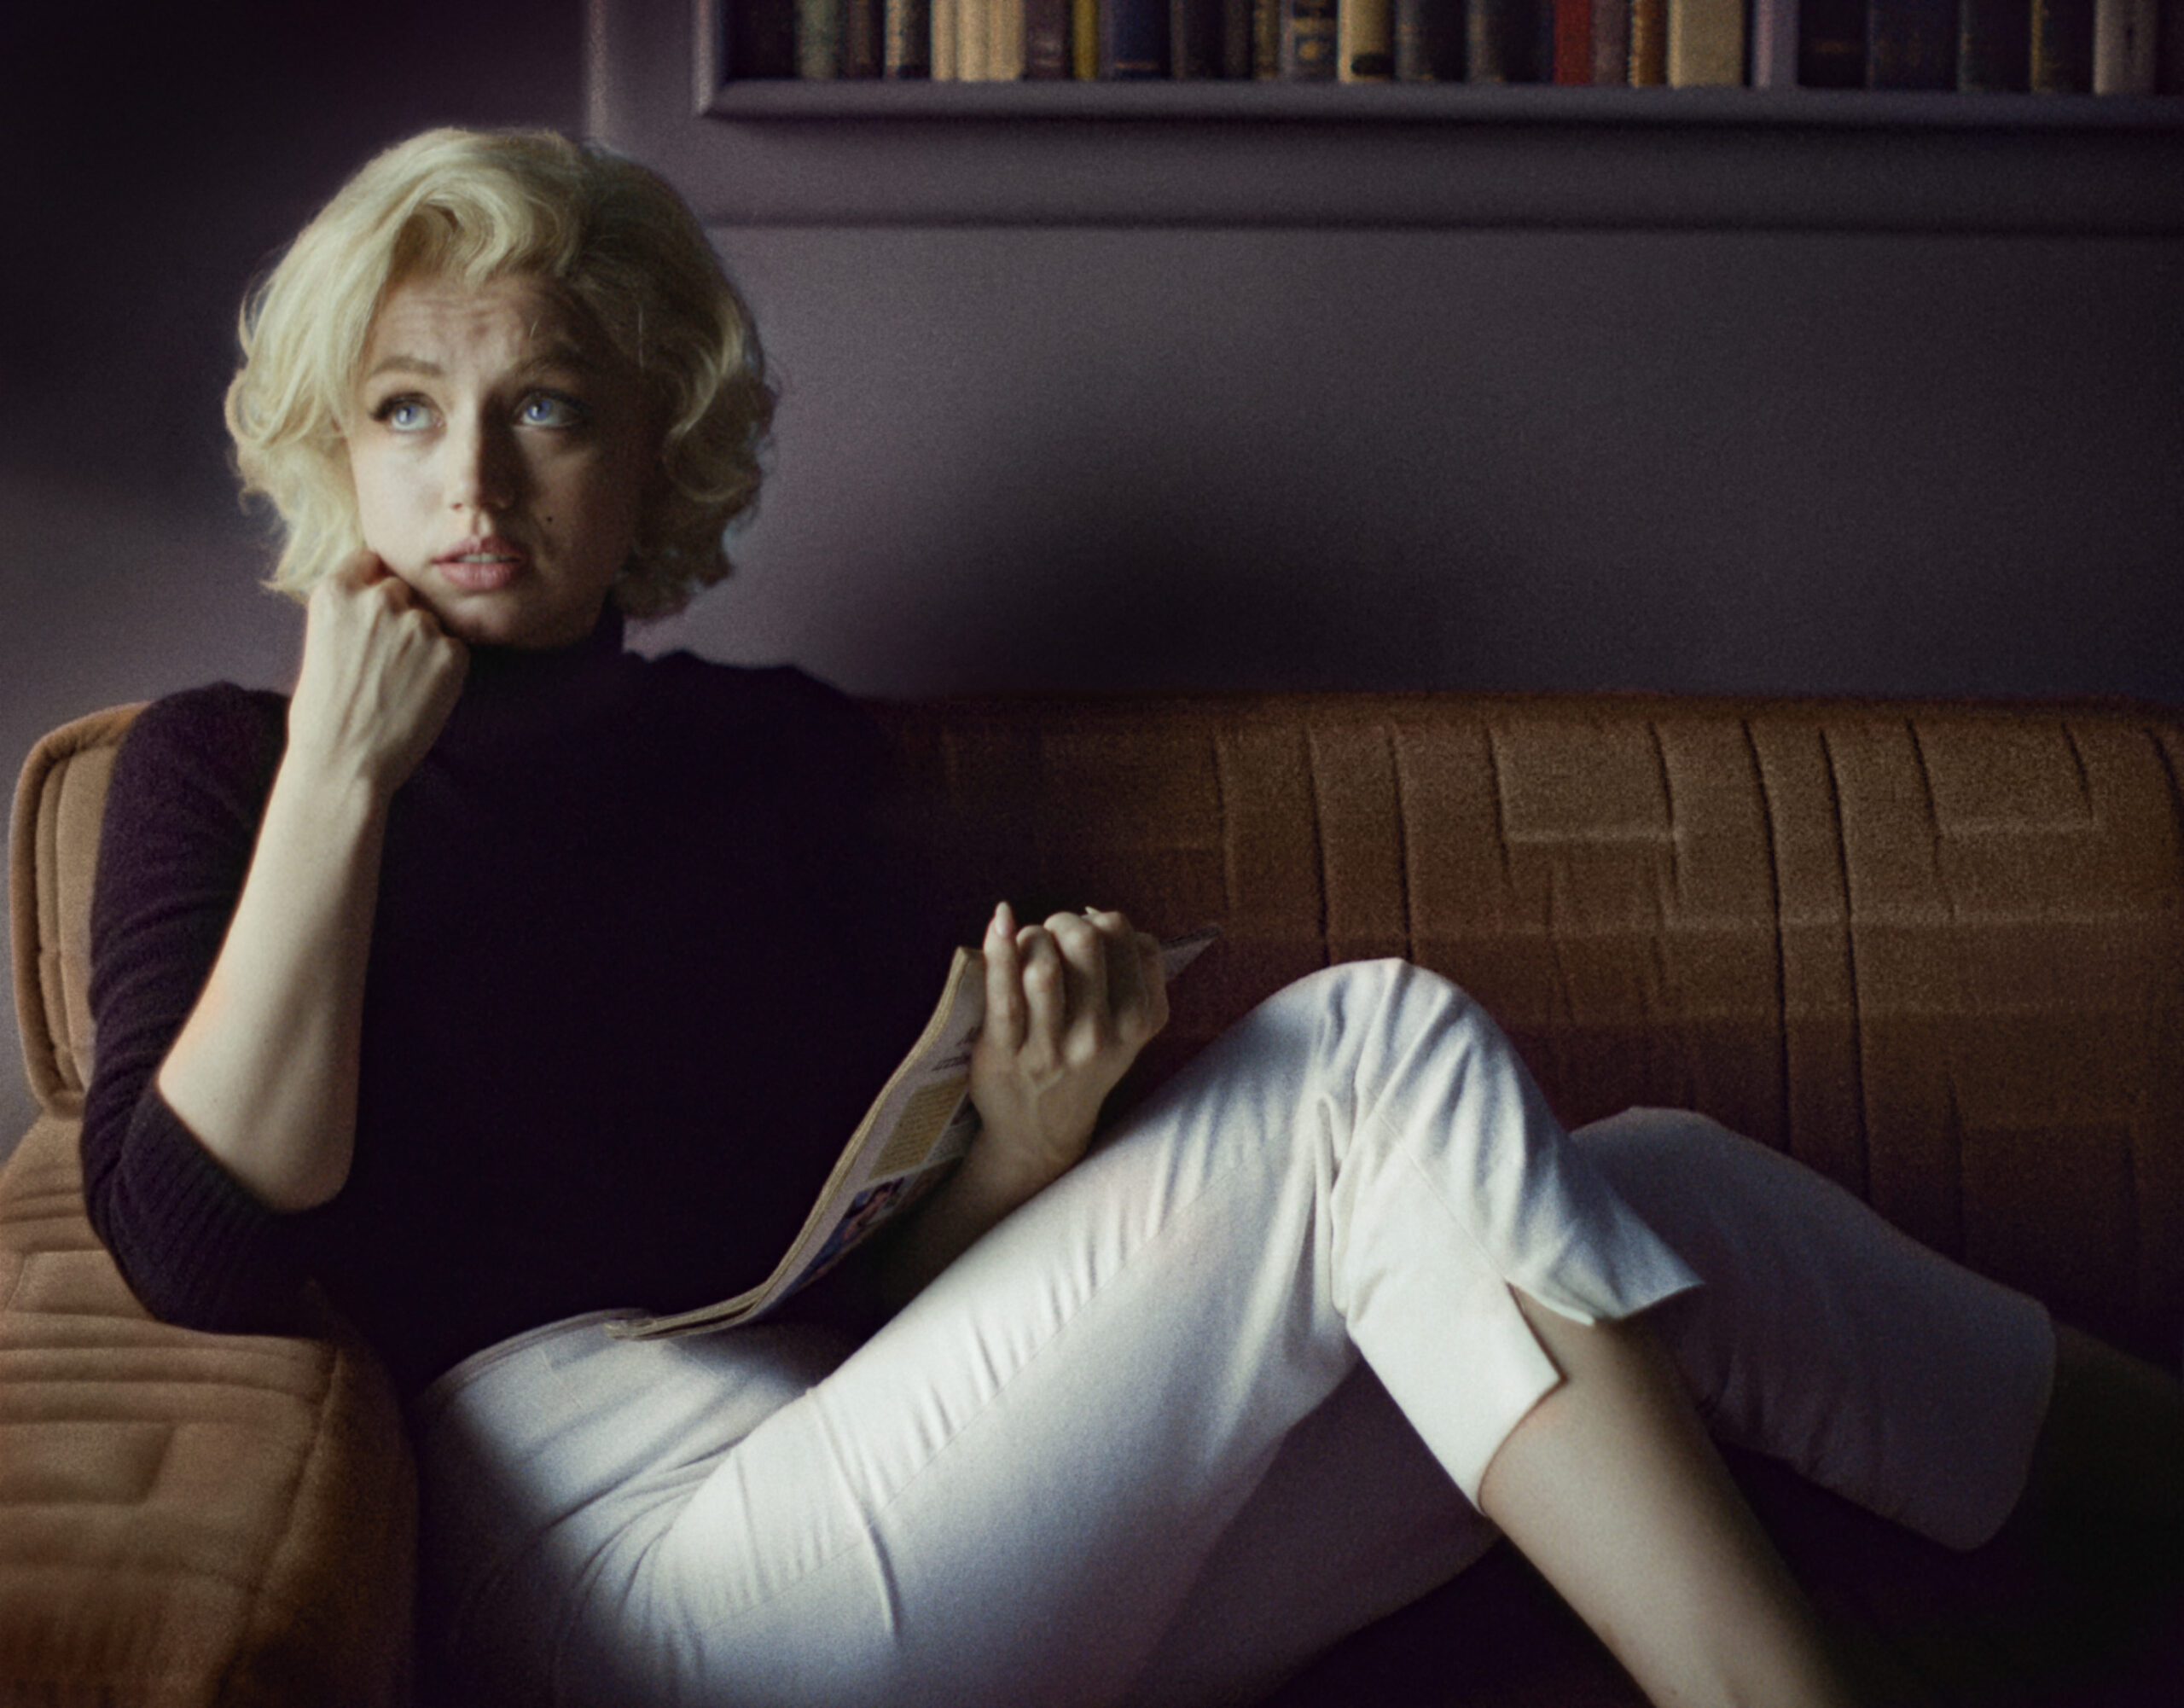 Blonde, il teaser trailer del film con Ana De Armas nei panni di Marilyn Monroe